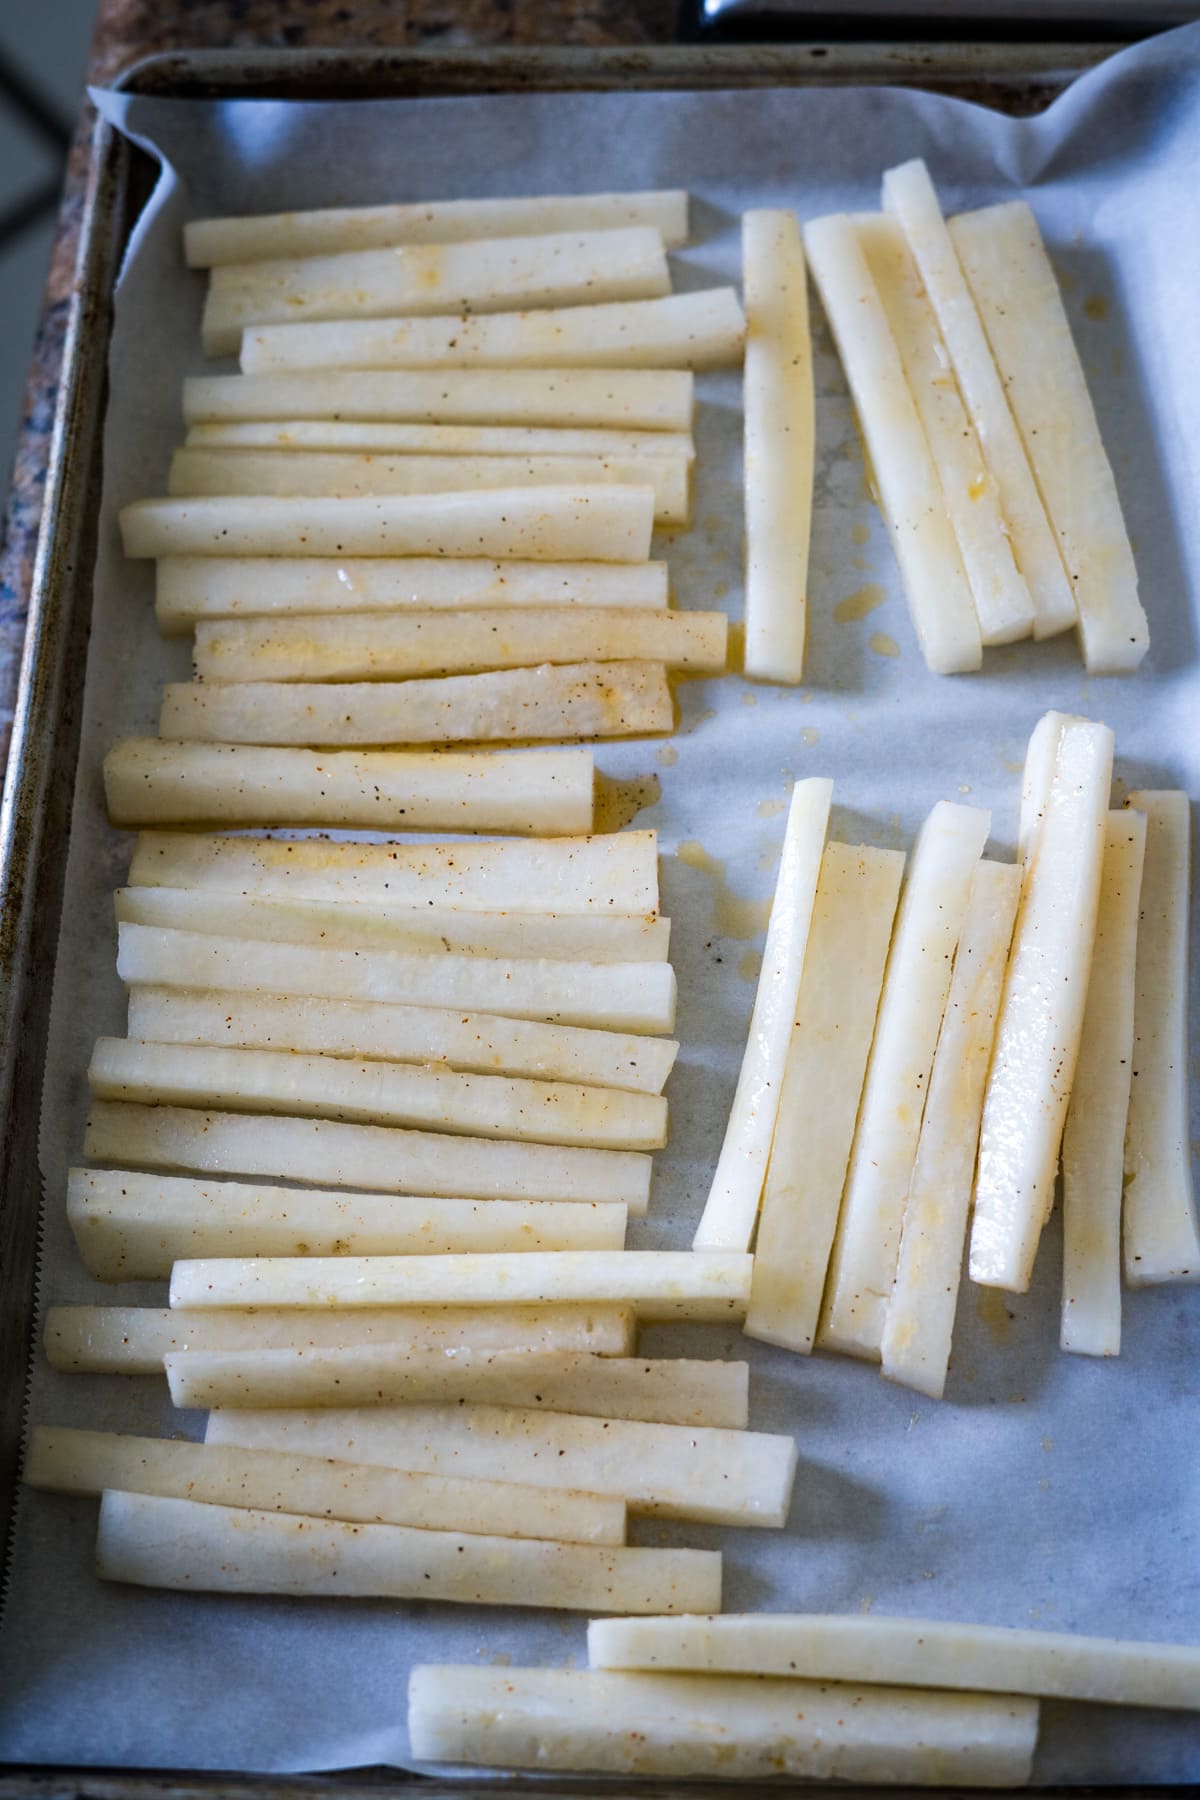 Daikon fries on a baking sheet.